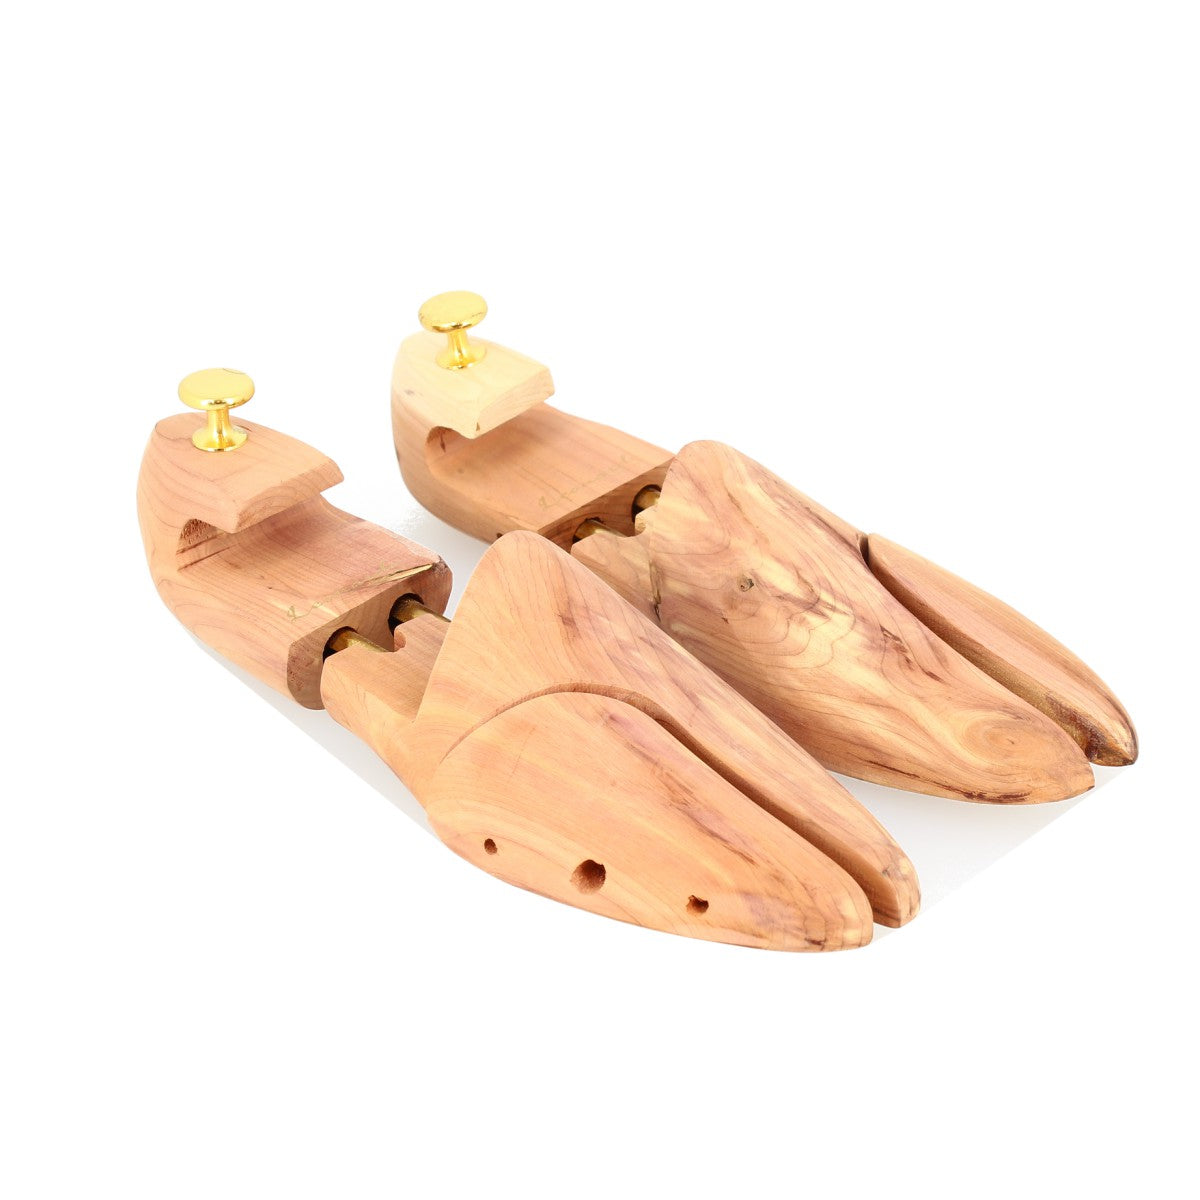 Tendiscarpe espandibile in legno di cedro aromatico in varie misure